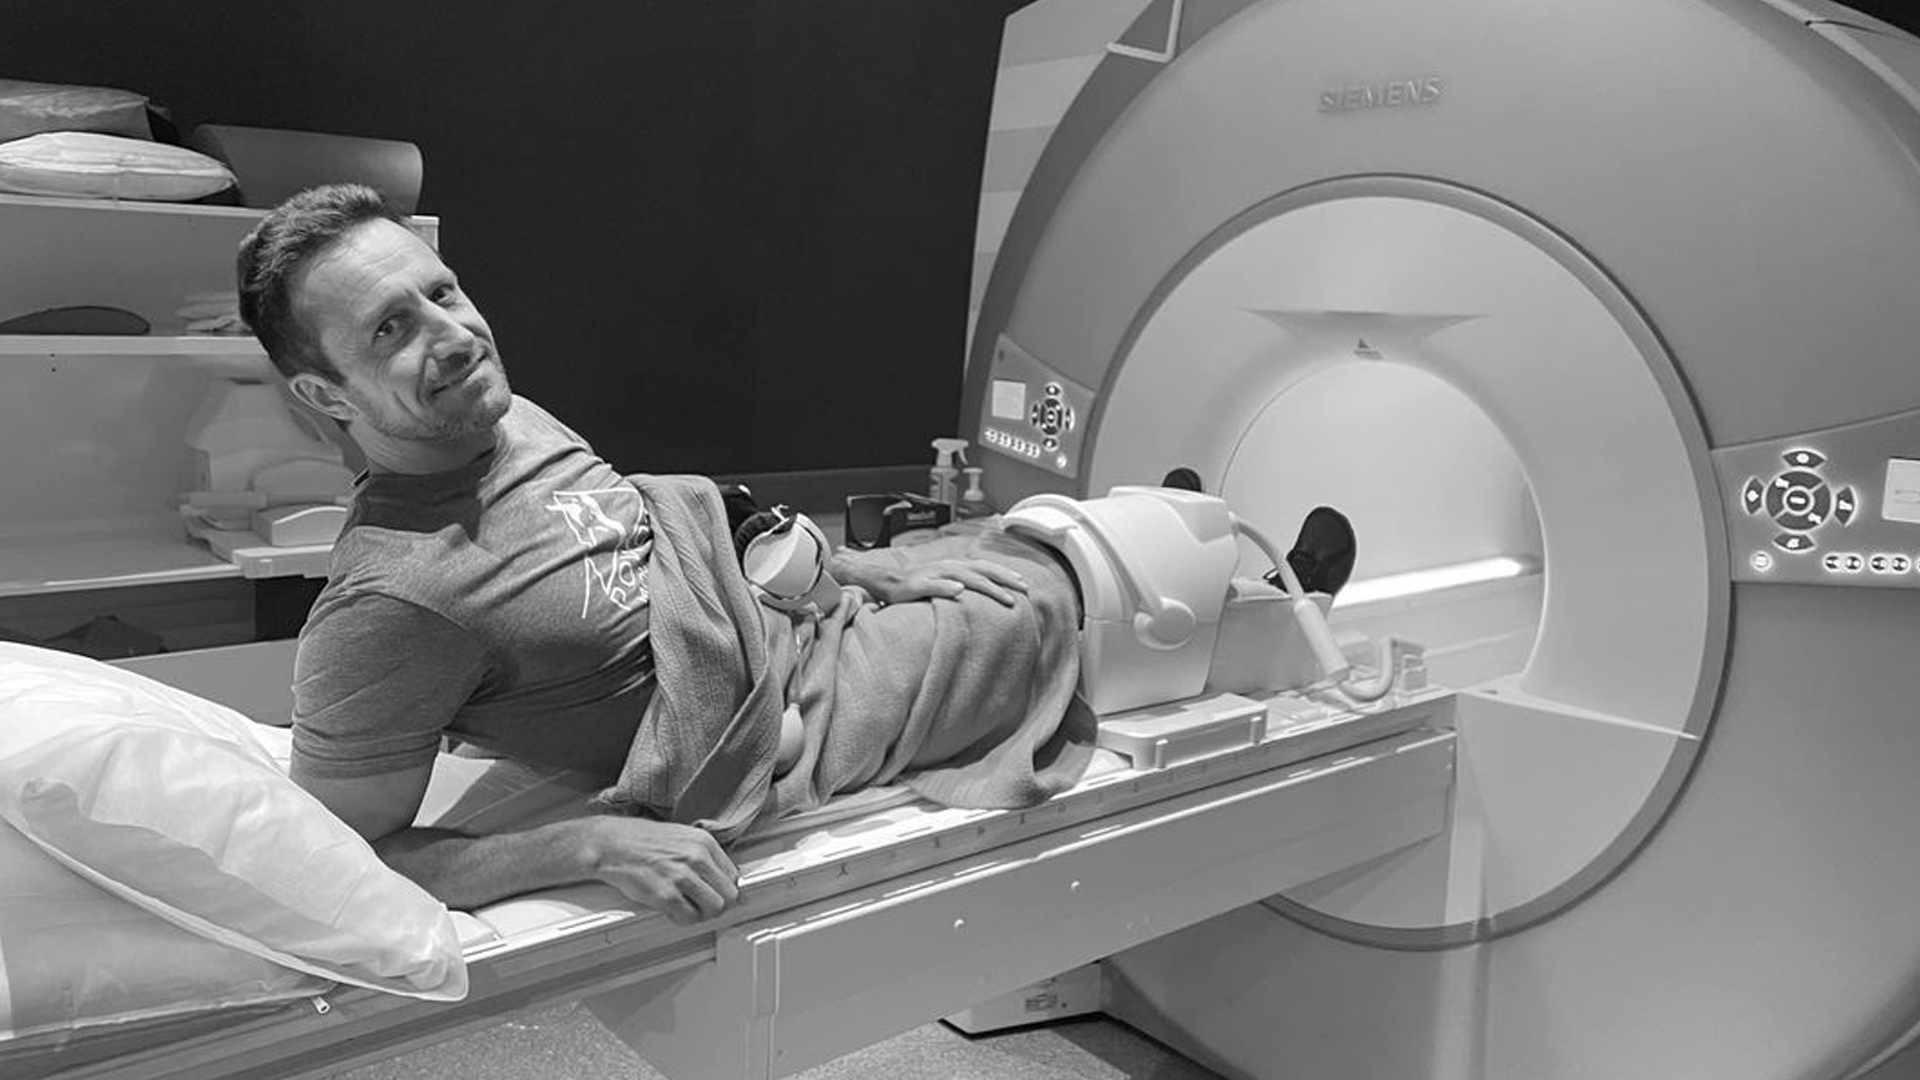 Brad's Knee MRI